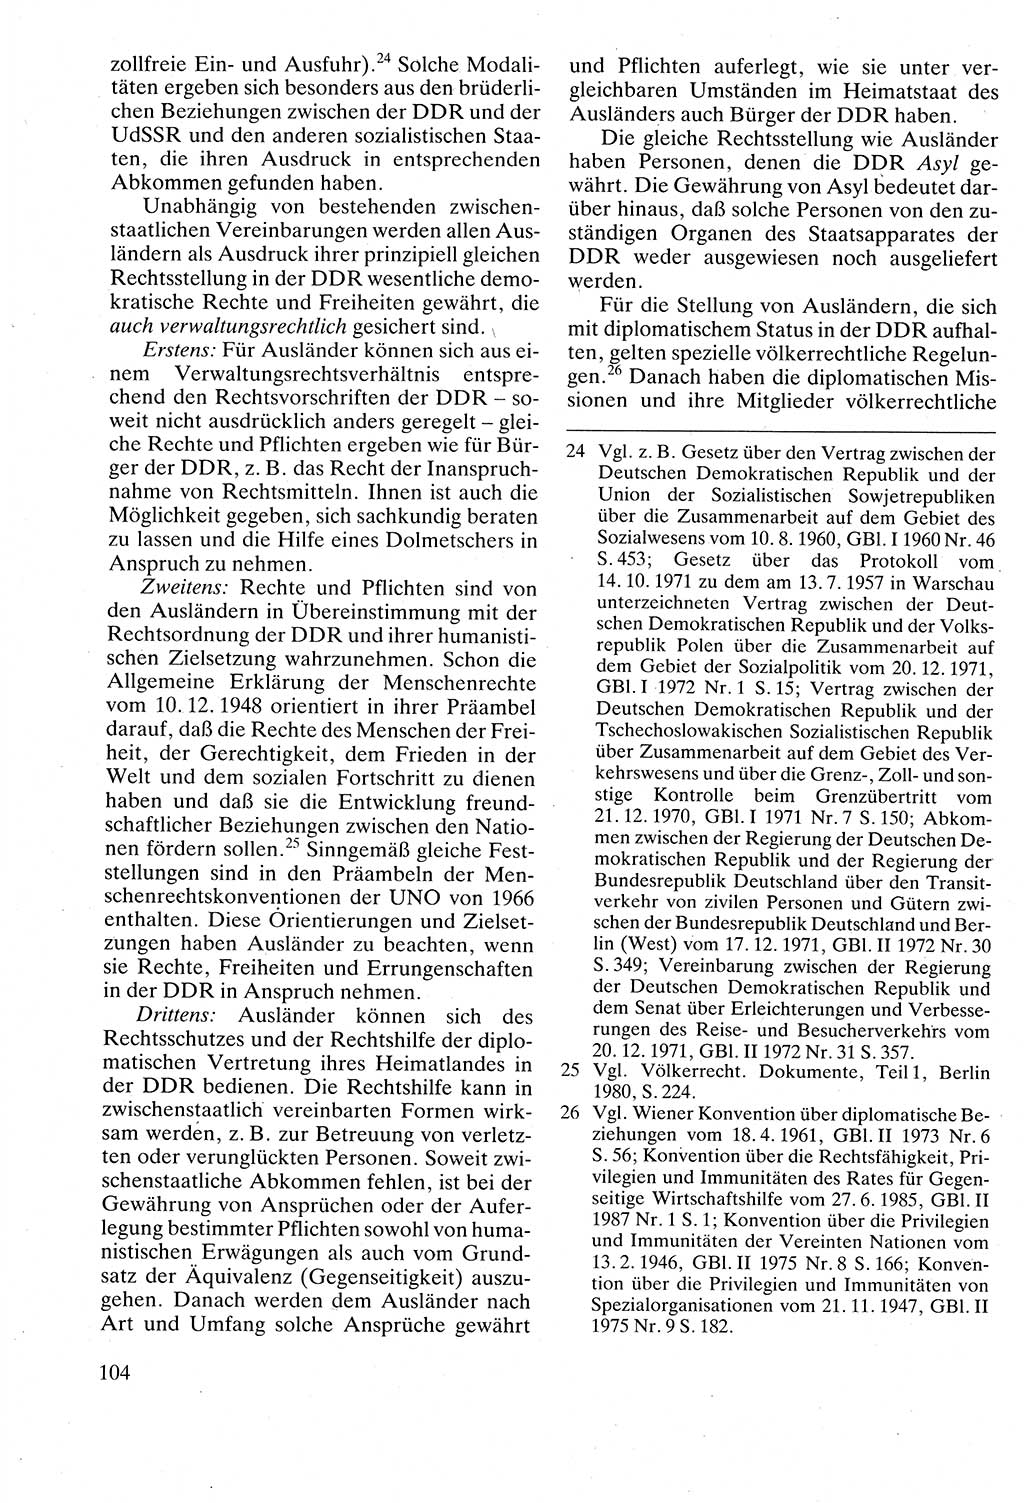 Verwaltungsrecht [Deutsche Demokratische Republik (DDR)], Lehrbuch 1988, Seite 104 (Verw.-R. DDR Lb. 1988, S. 104)